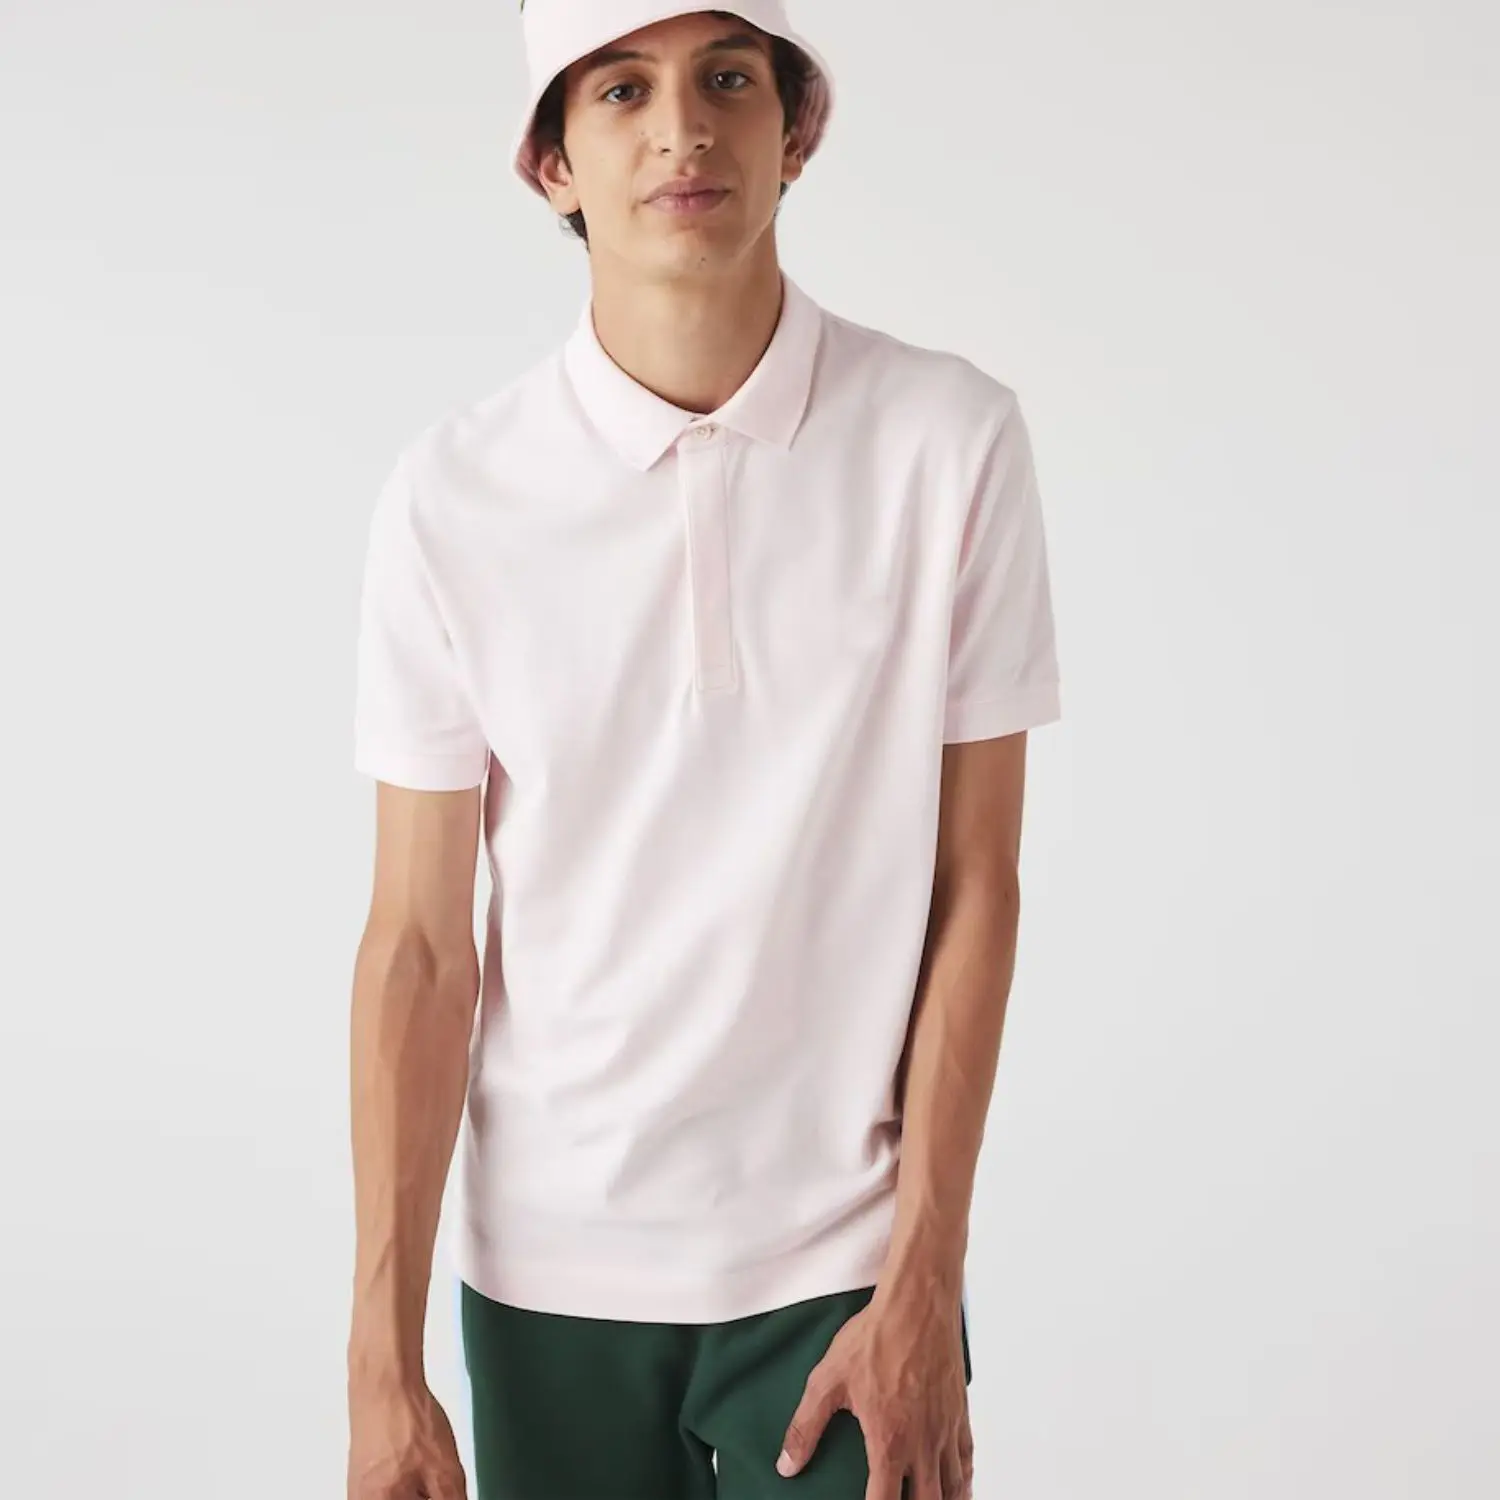 Camisa de polo bordada com logotipo personalizado, ajuste regular 100%, cor-de-rosa claro, pique de algodão, com botão oculto, capa e aro